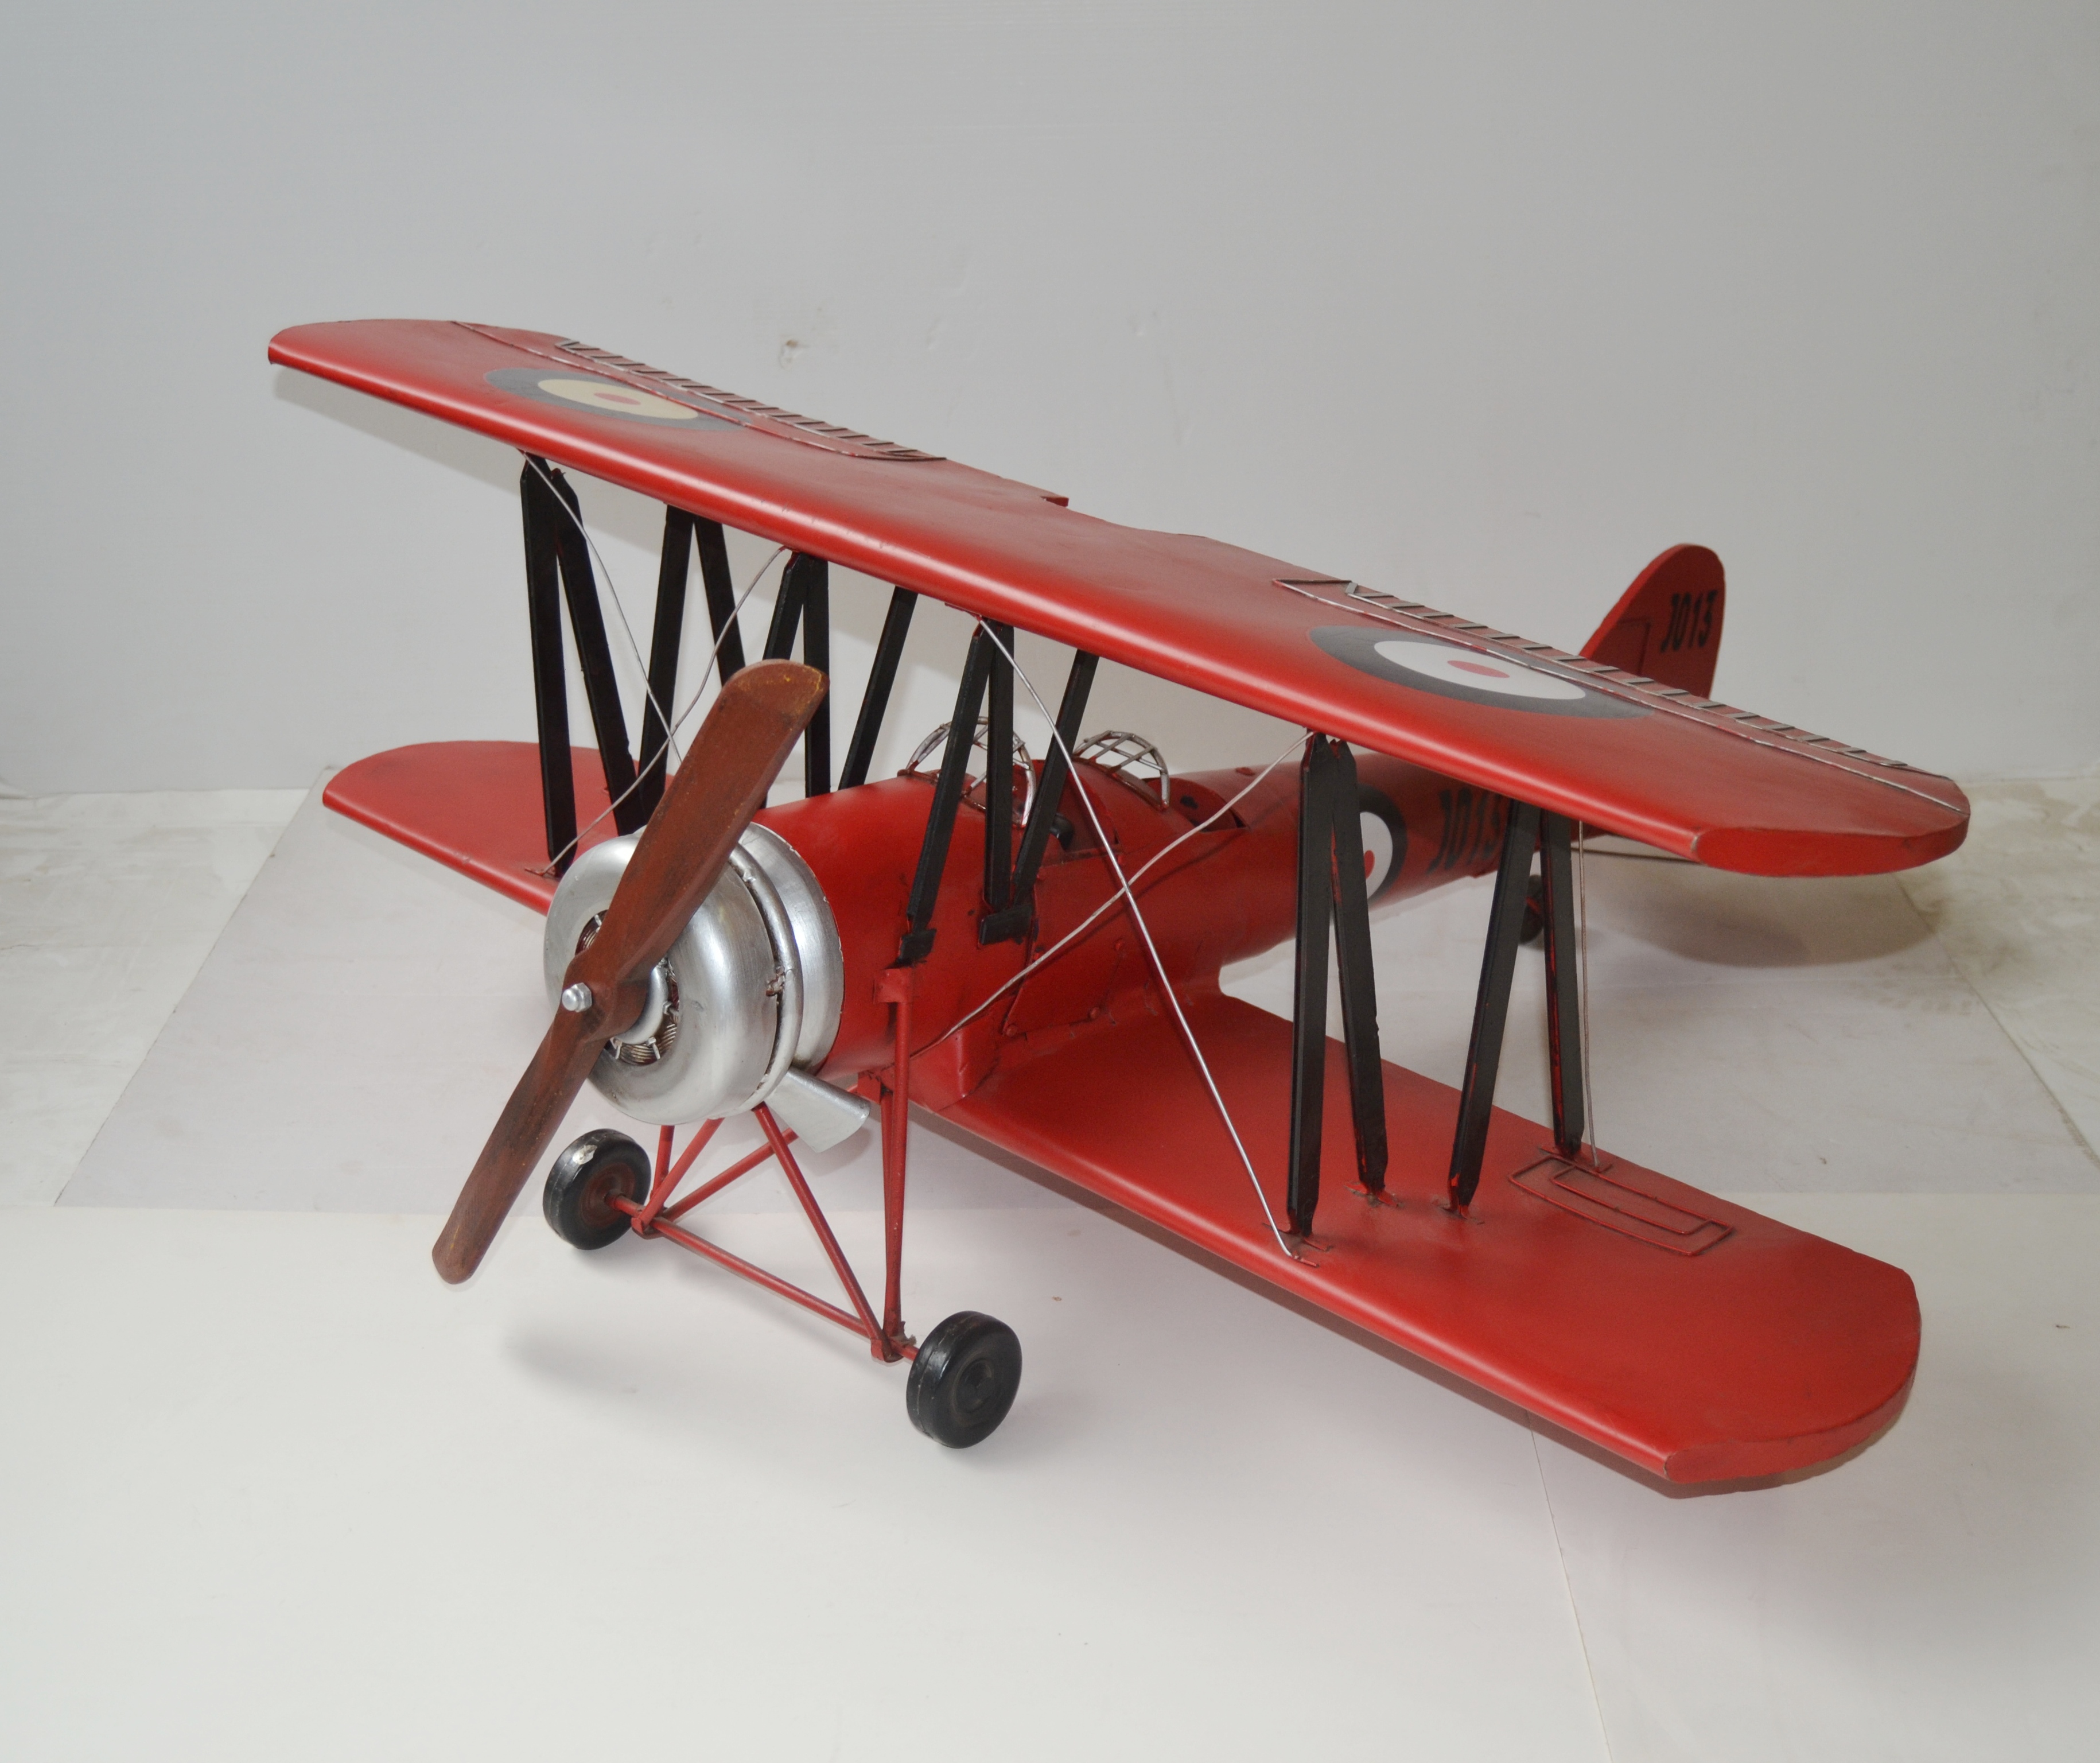 Blechflugzeug Doppeldecker Modellflugzeug Retro Antik Flugzeugmodell DEKO